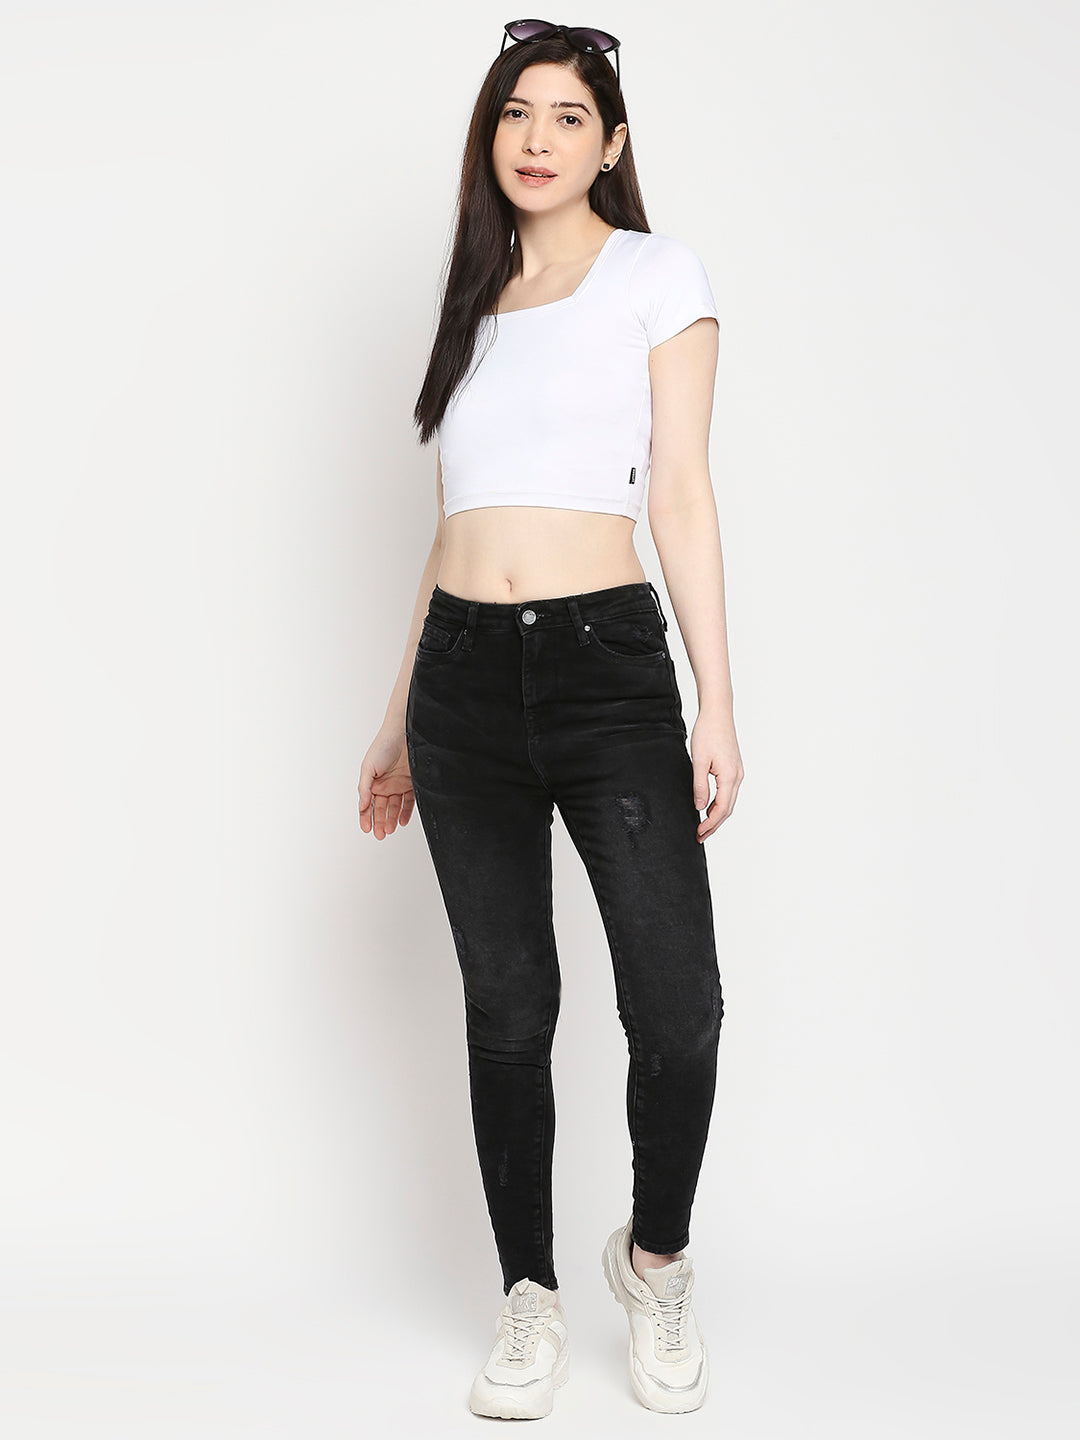 Spykar Black Lycra Super Skinny Ankle Length Jeans For Women (Alexa)